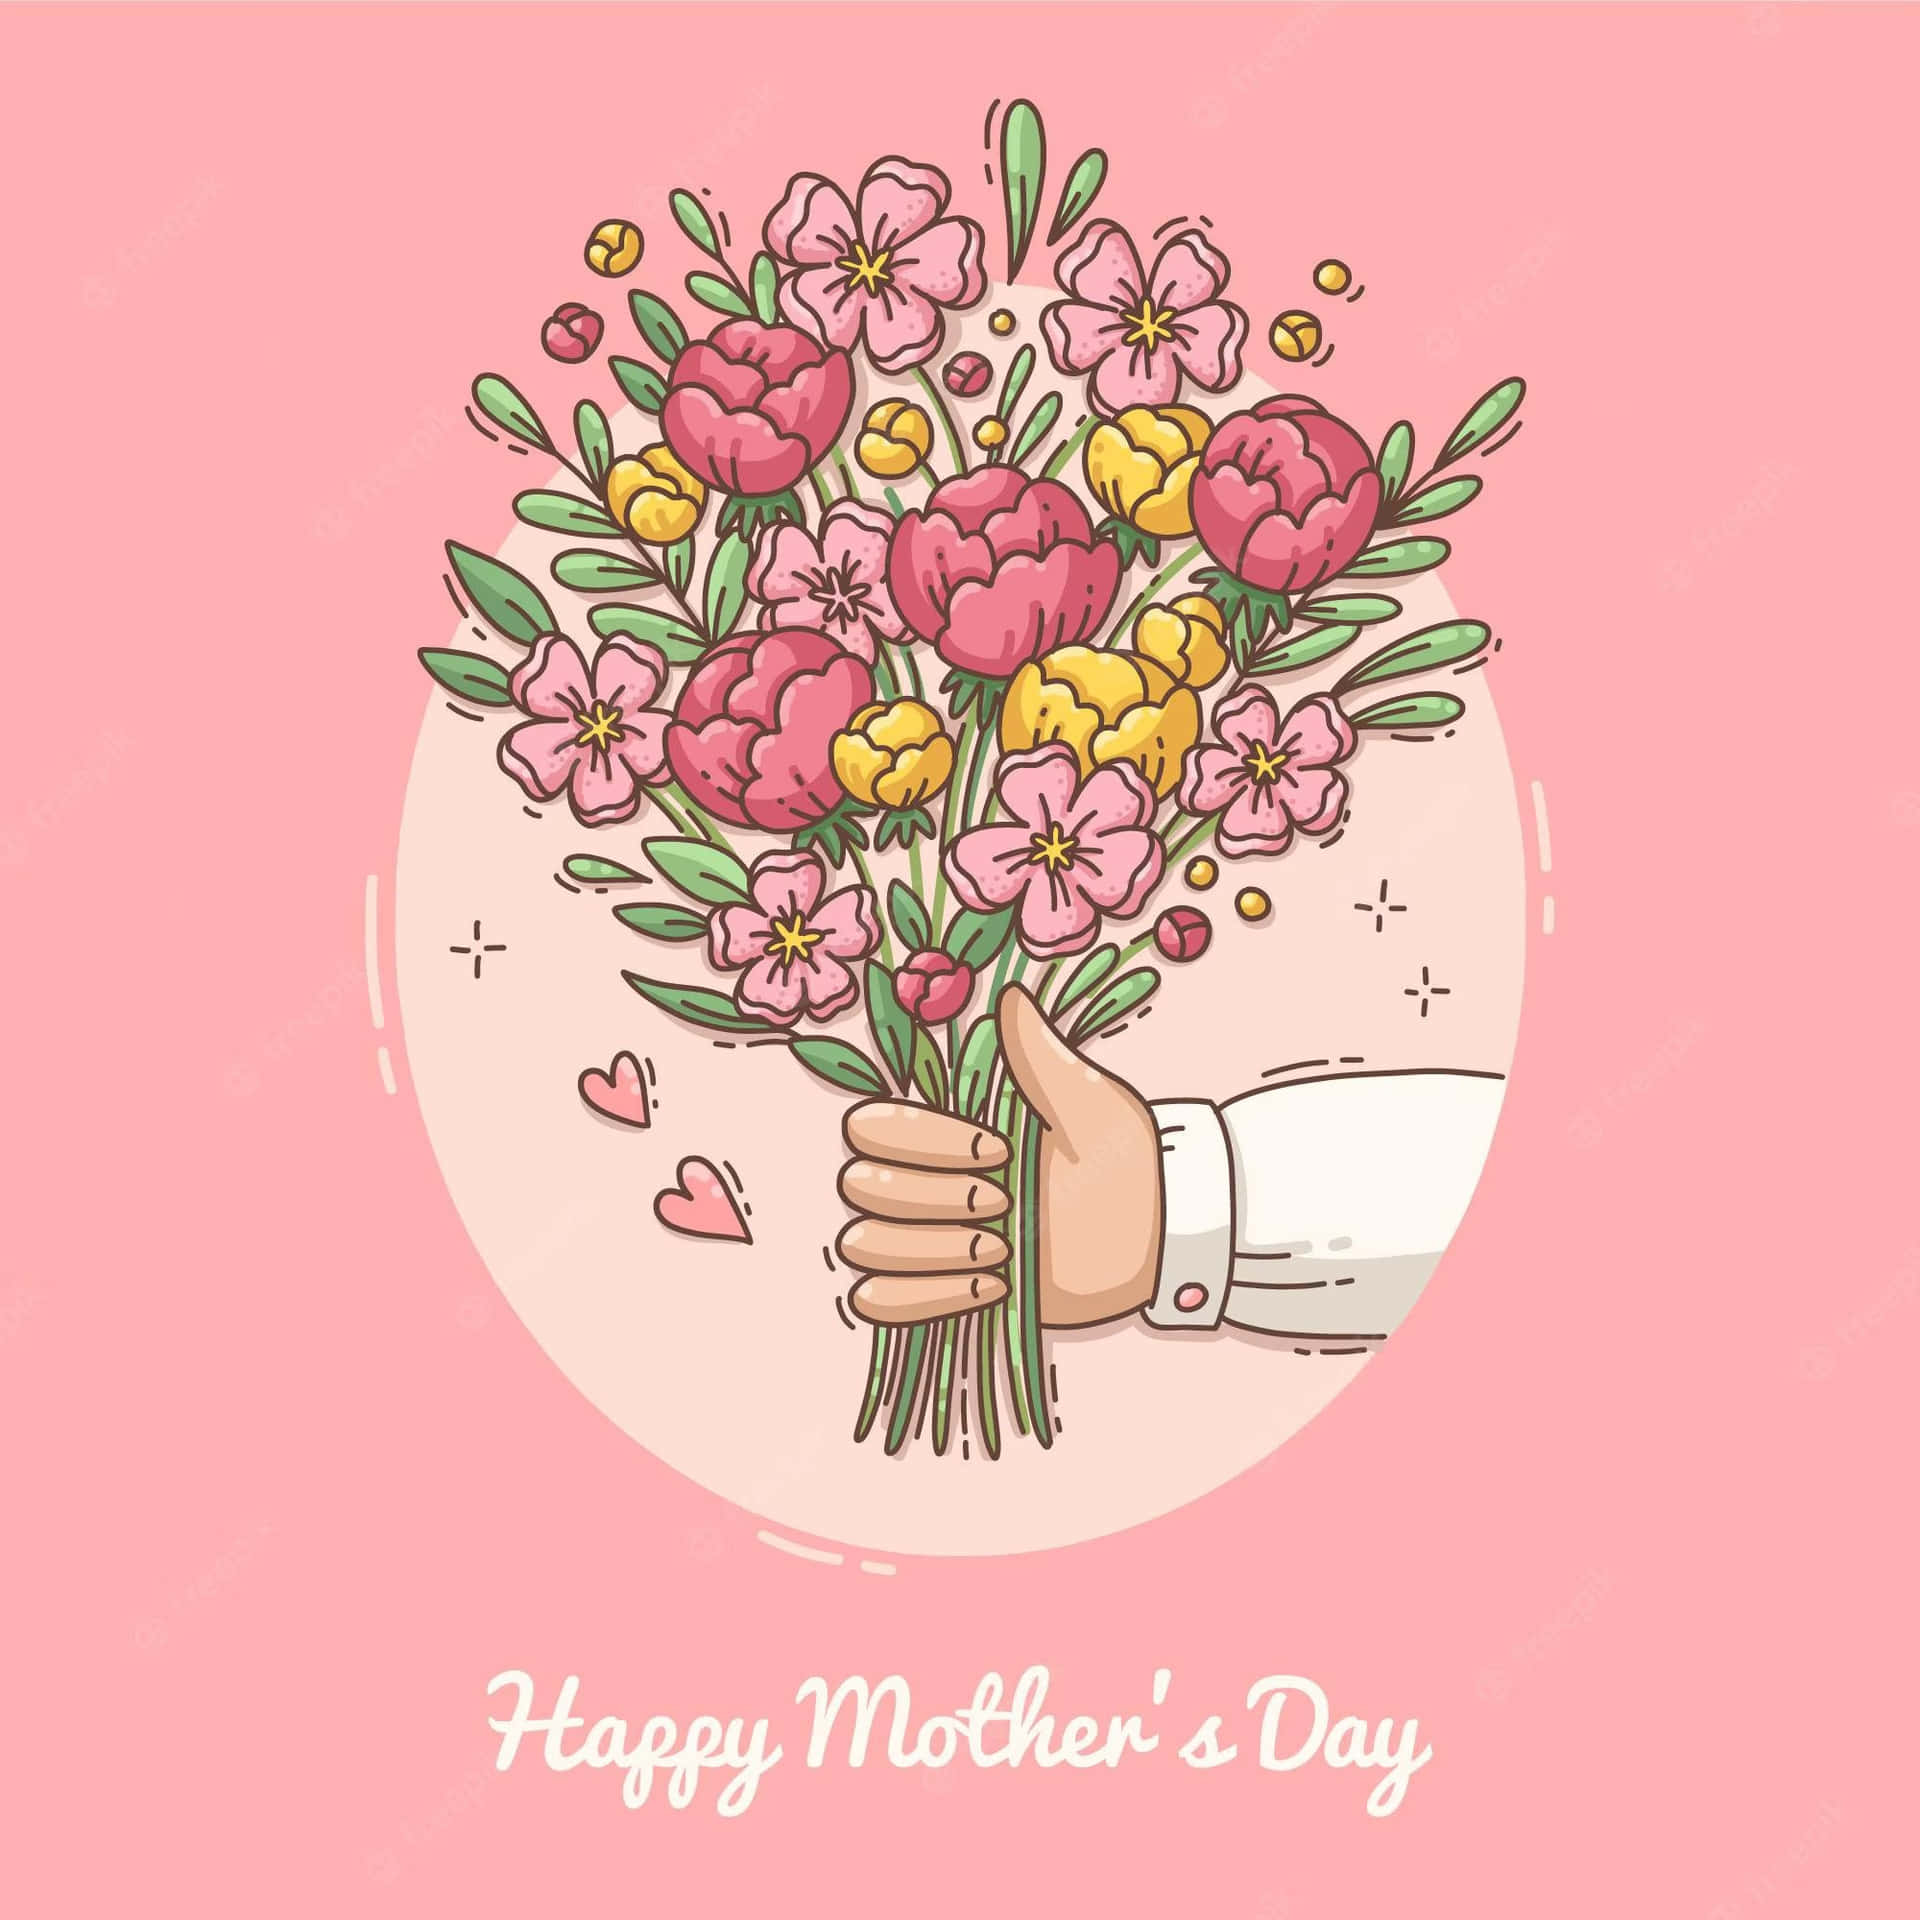 Tarjetade Feliz Día De Las Madres Con Una Mano Sosteniendo Un Ramo De Flores.